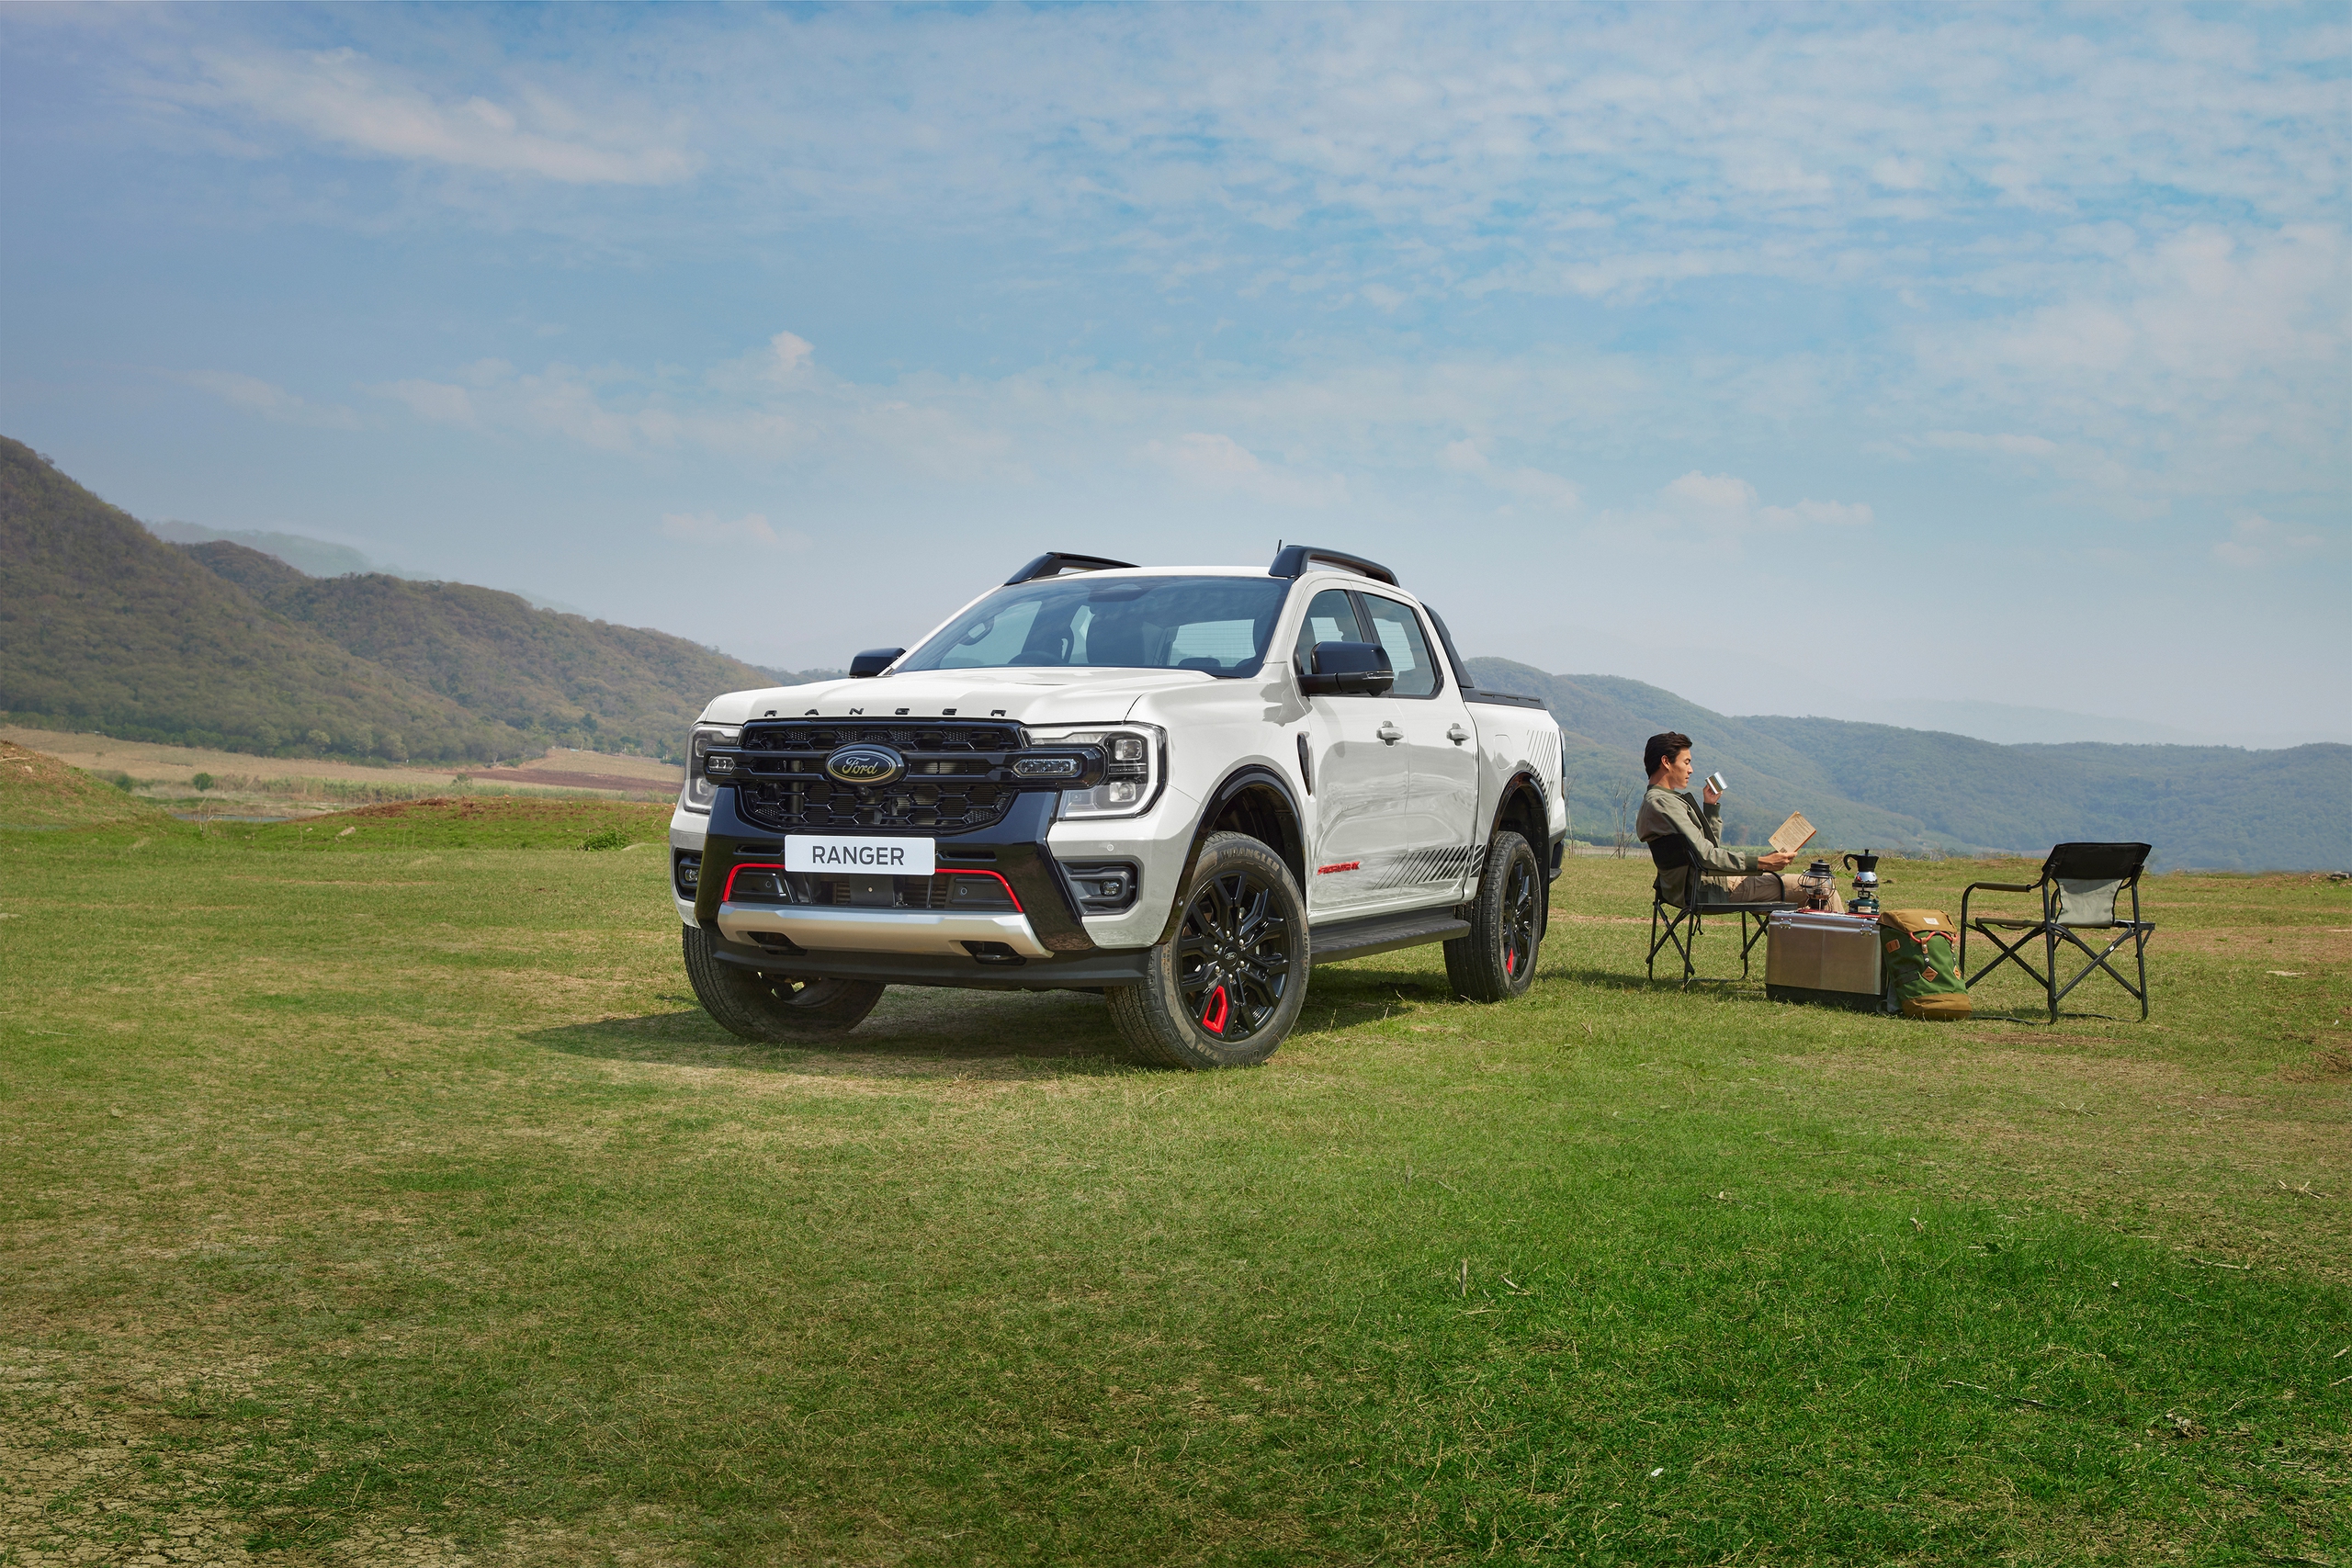 Công bố giá Ford Everest Platinum và Ranger Stormtrak: Từ 1,039 tỷ đồng, thiết kế mới cho khách hàng Việt